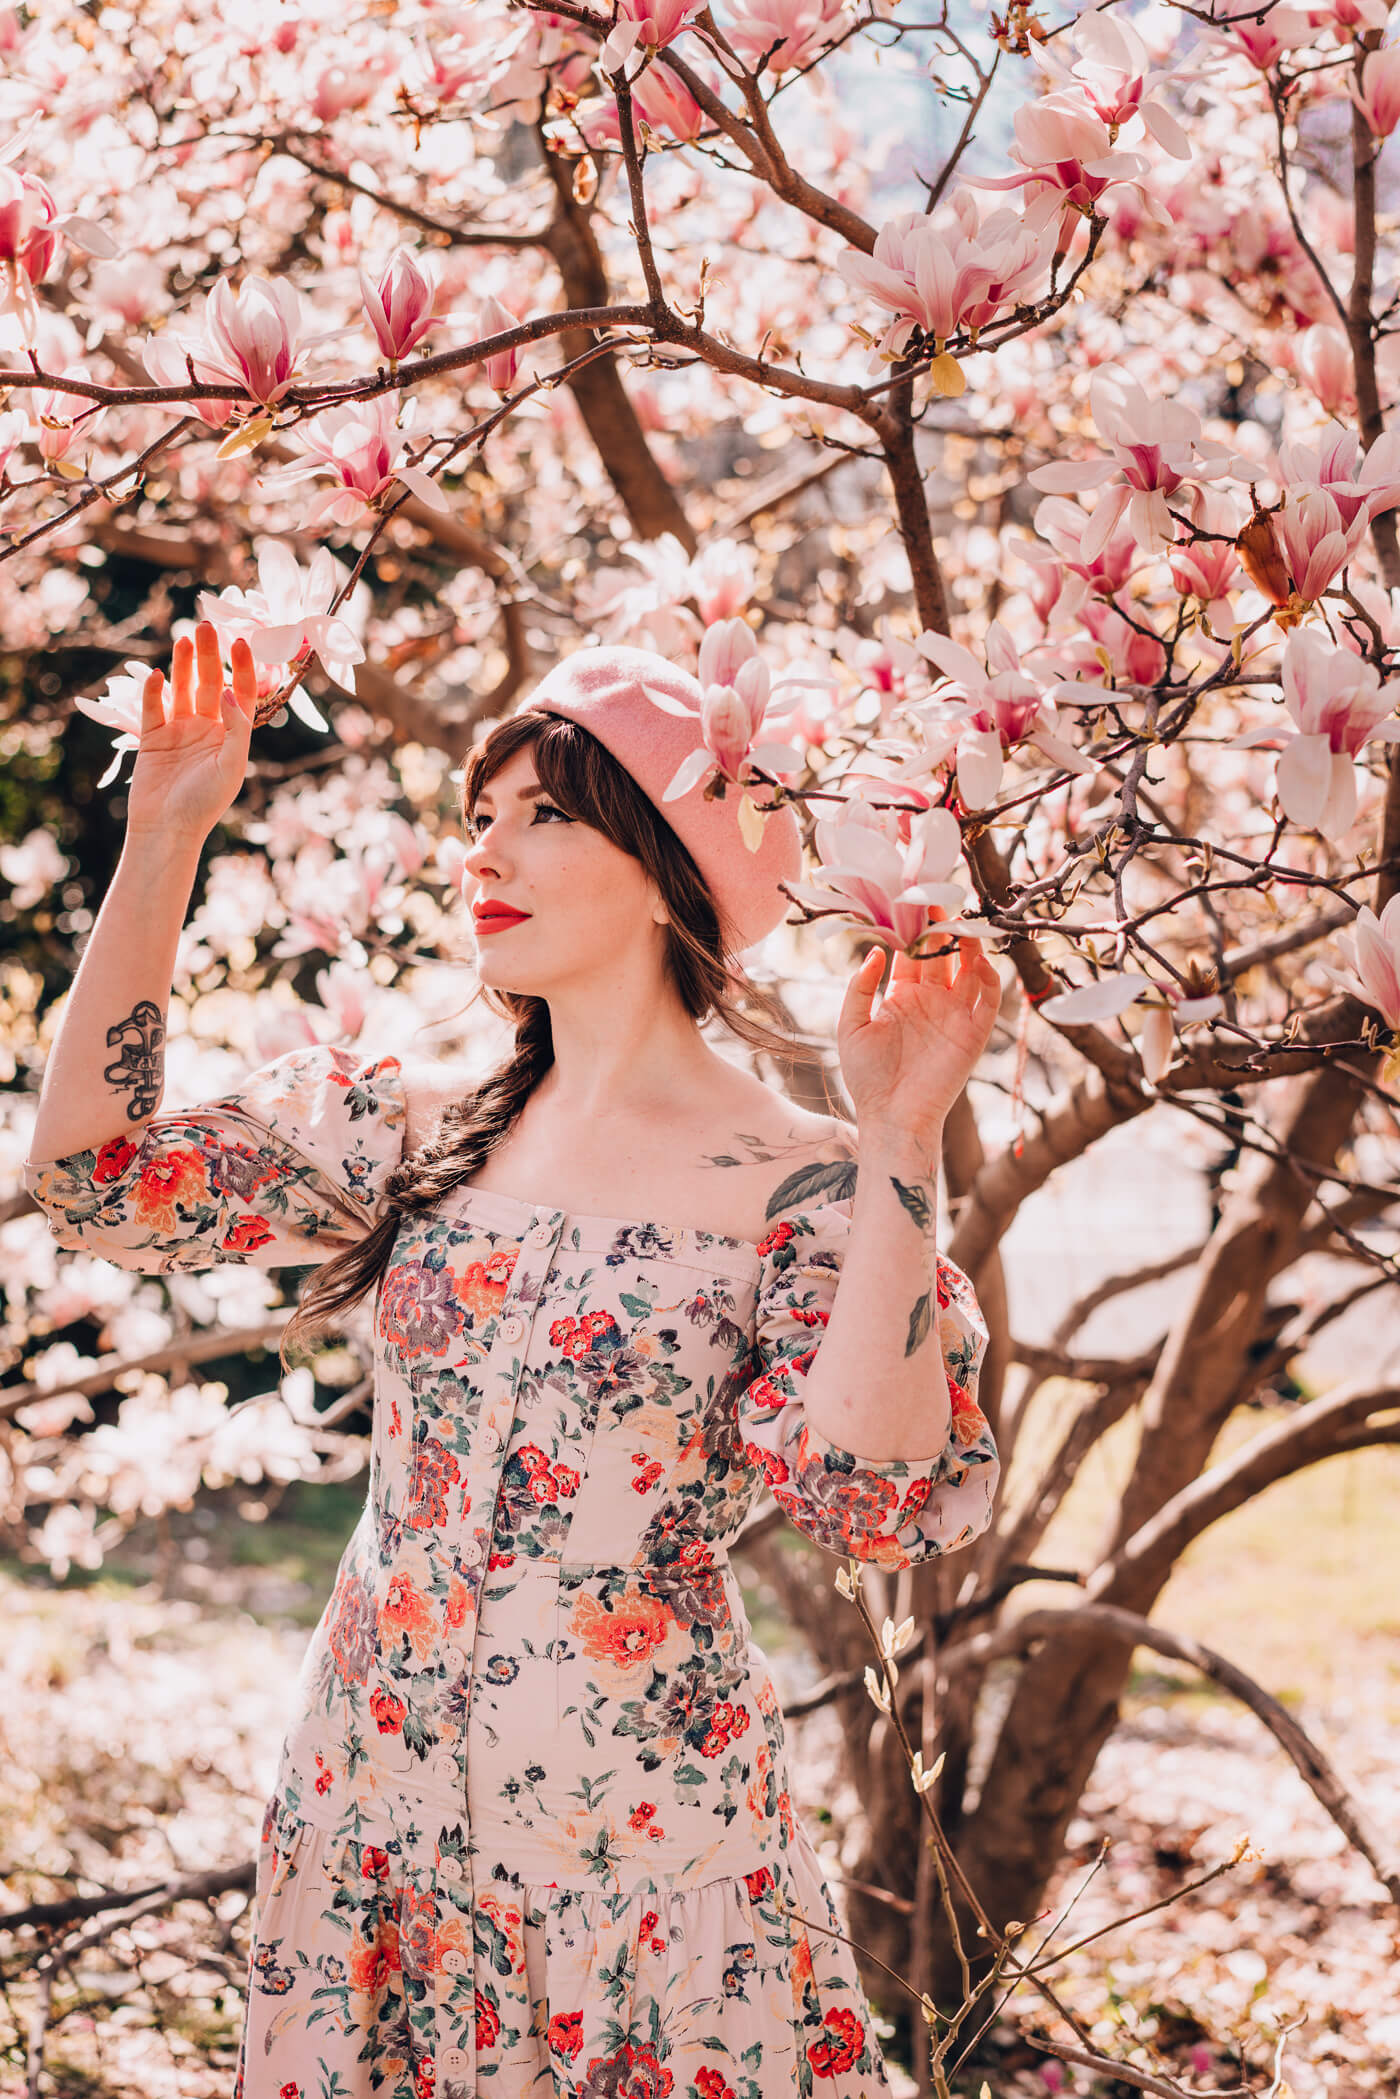 rebecca taylor dress, off the shoulder pink summer floral dress 2018